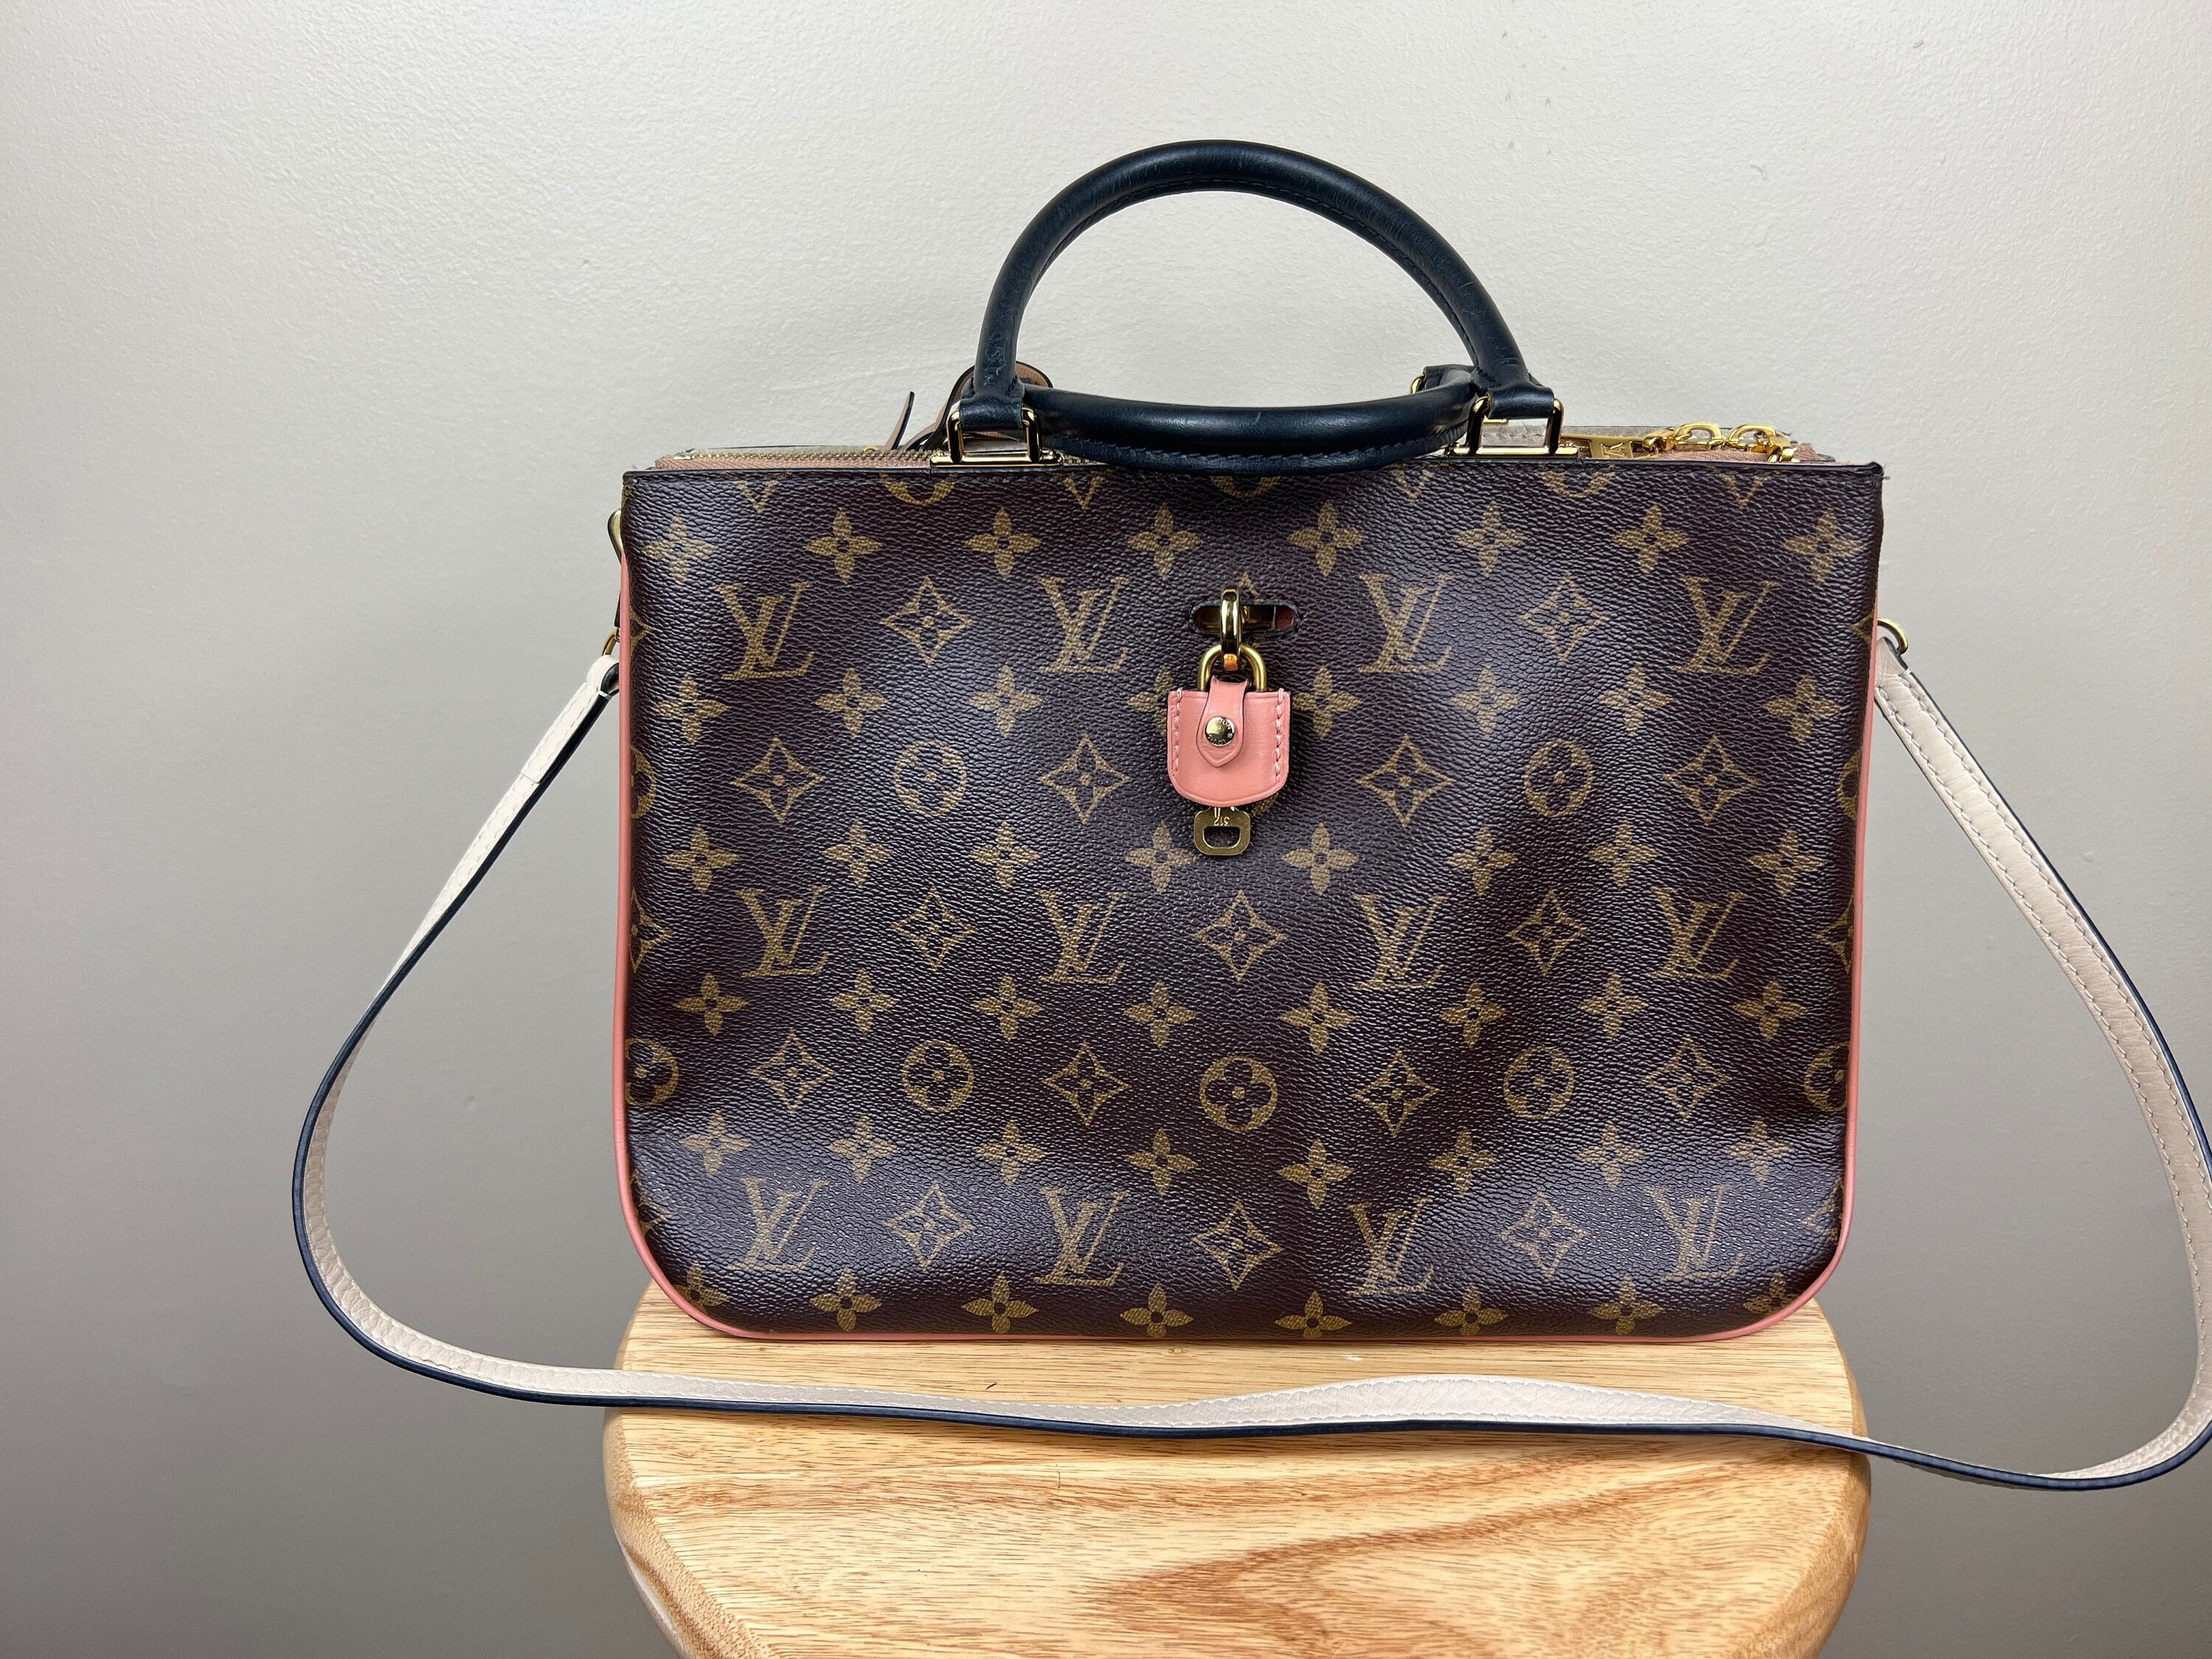 Louis Vuitton Twist Monogram Blossom Bag, Bragmybag